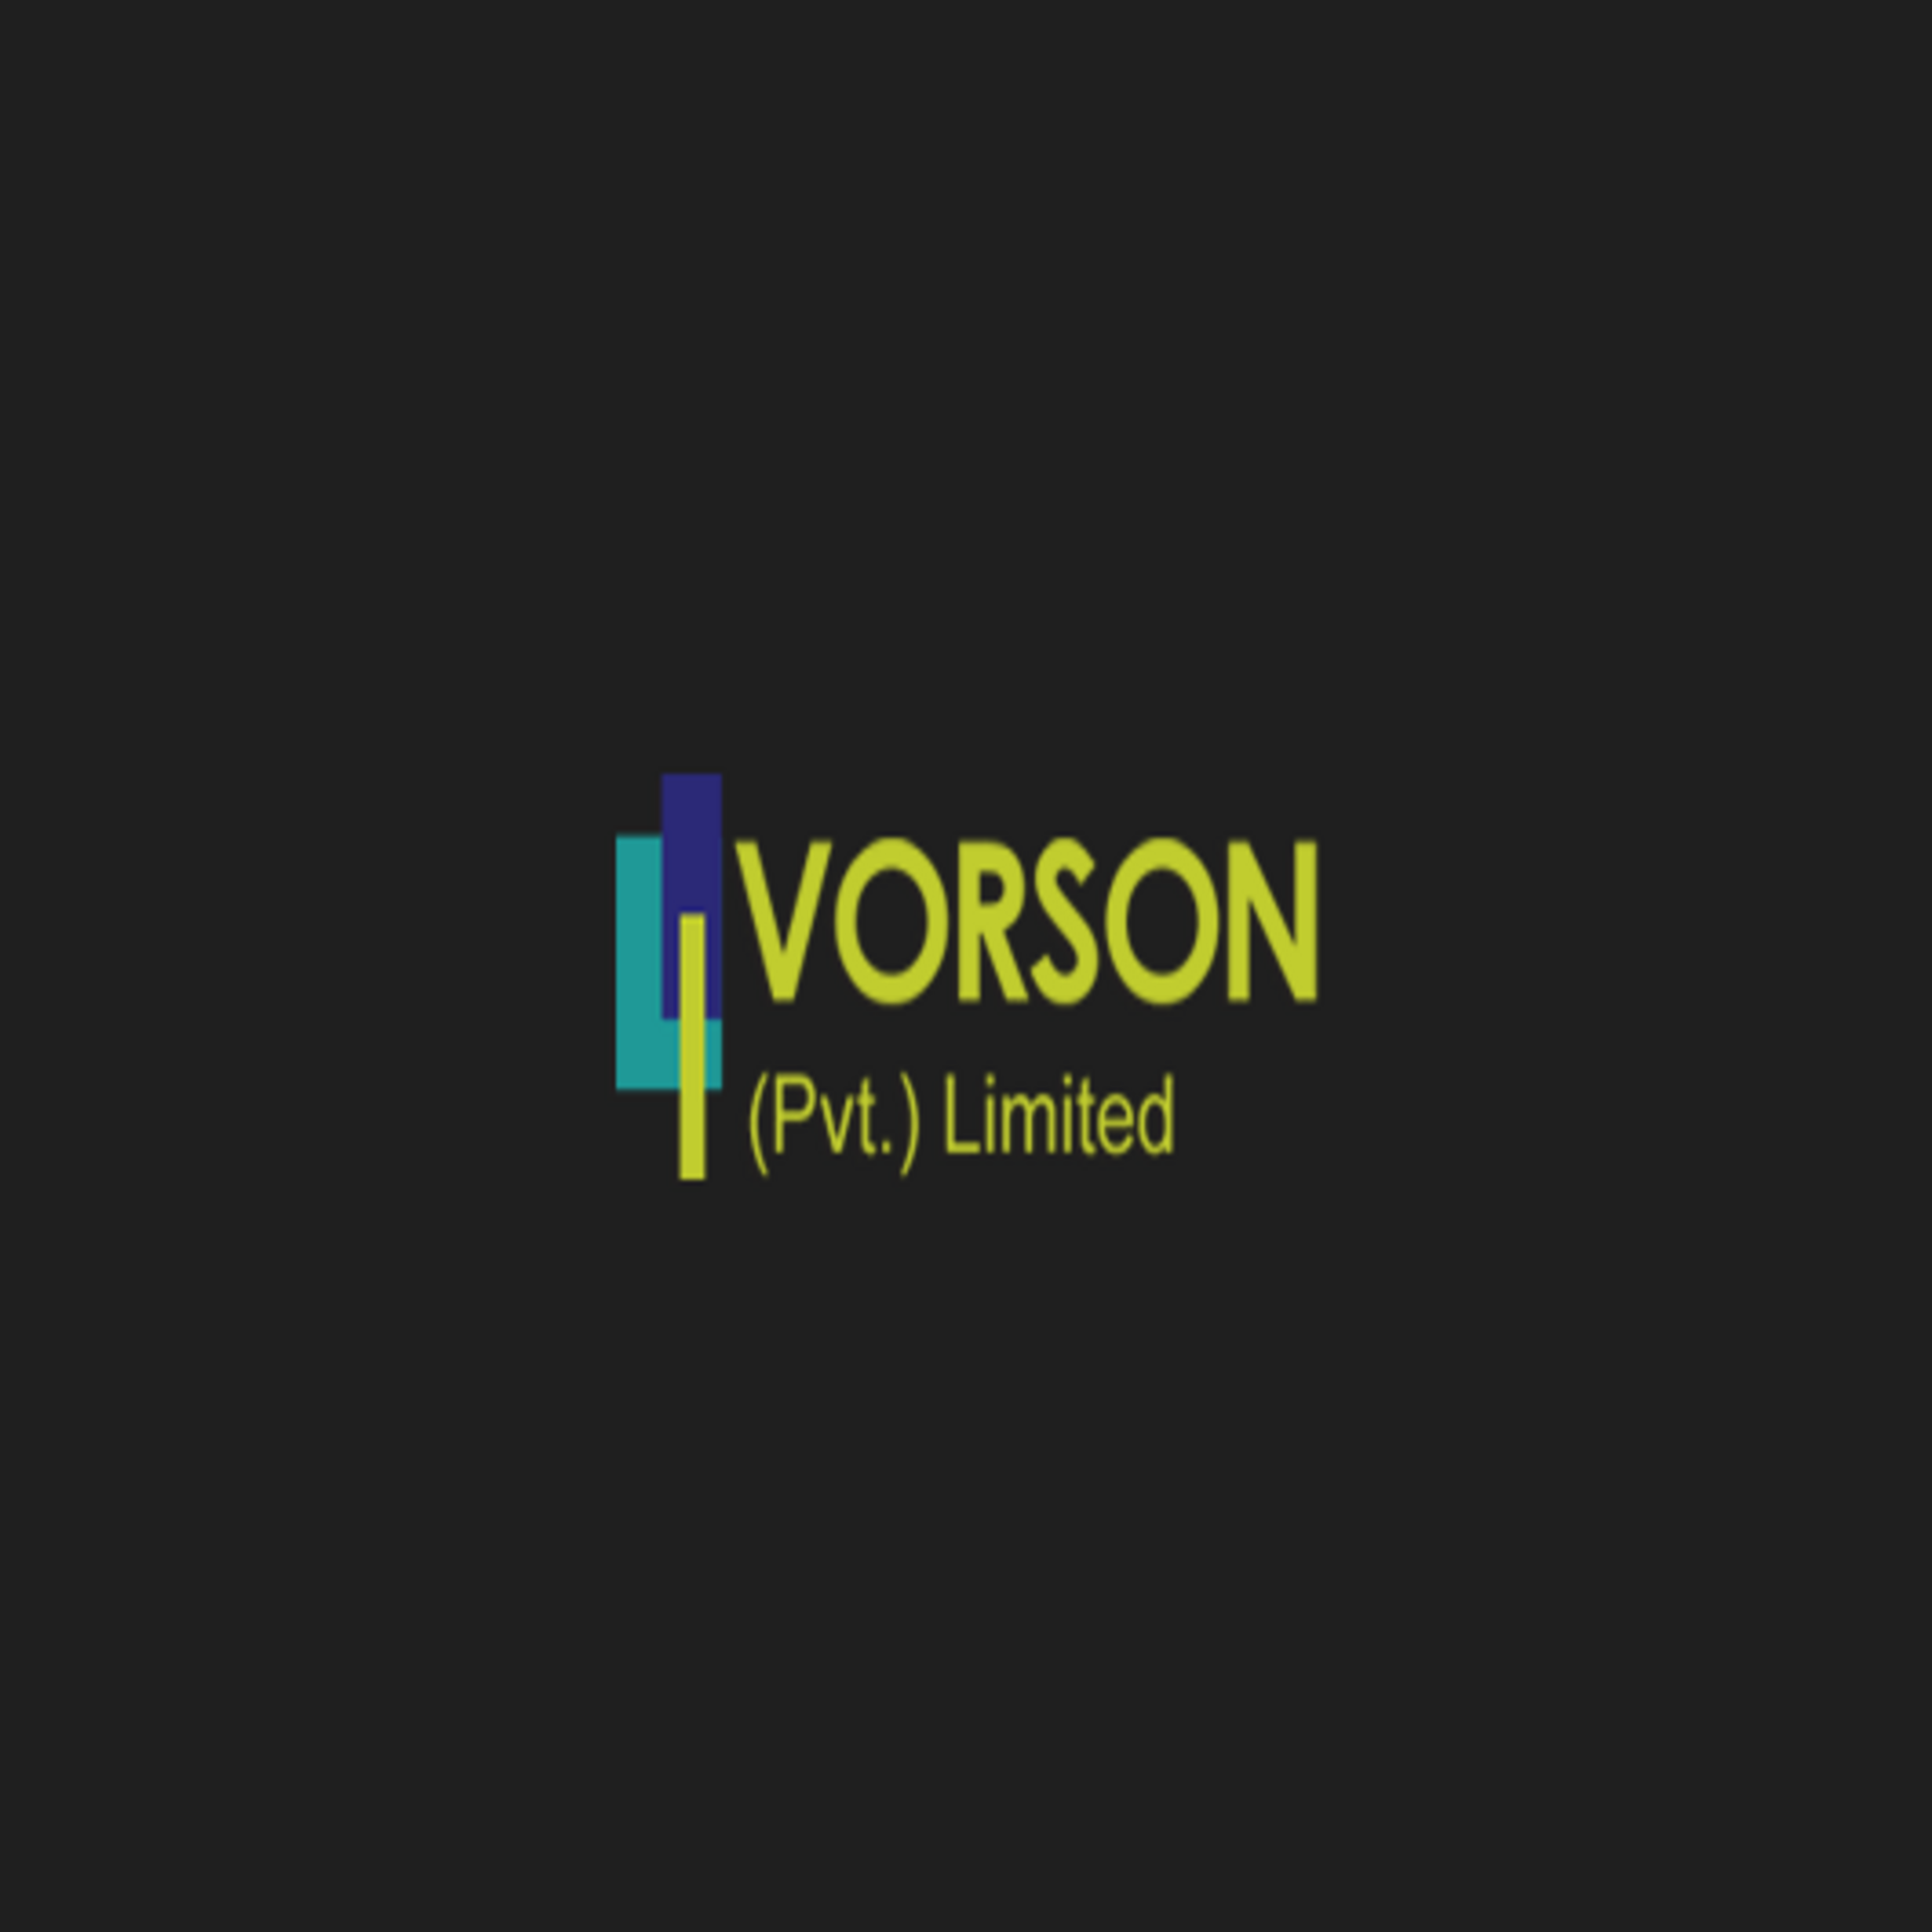 Vorson Private Limited in Elioplus